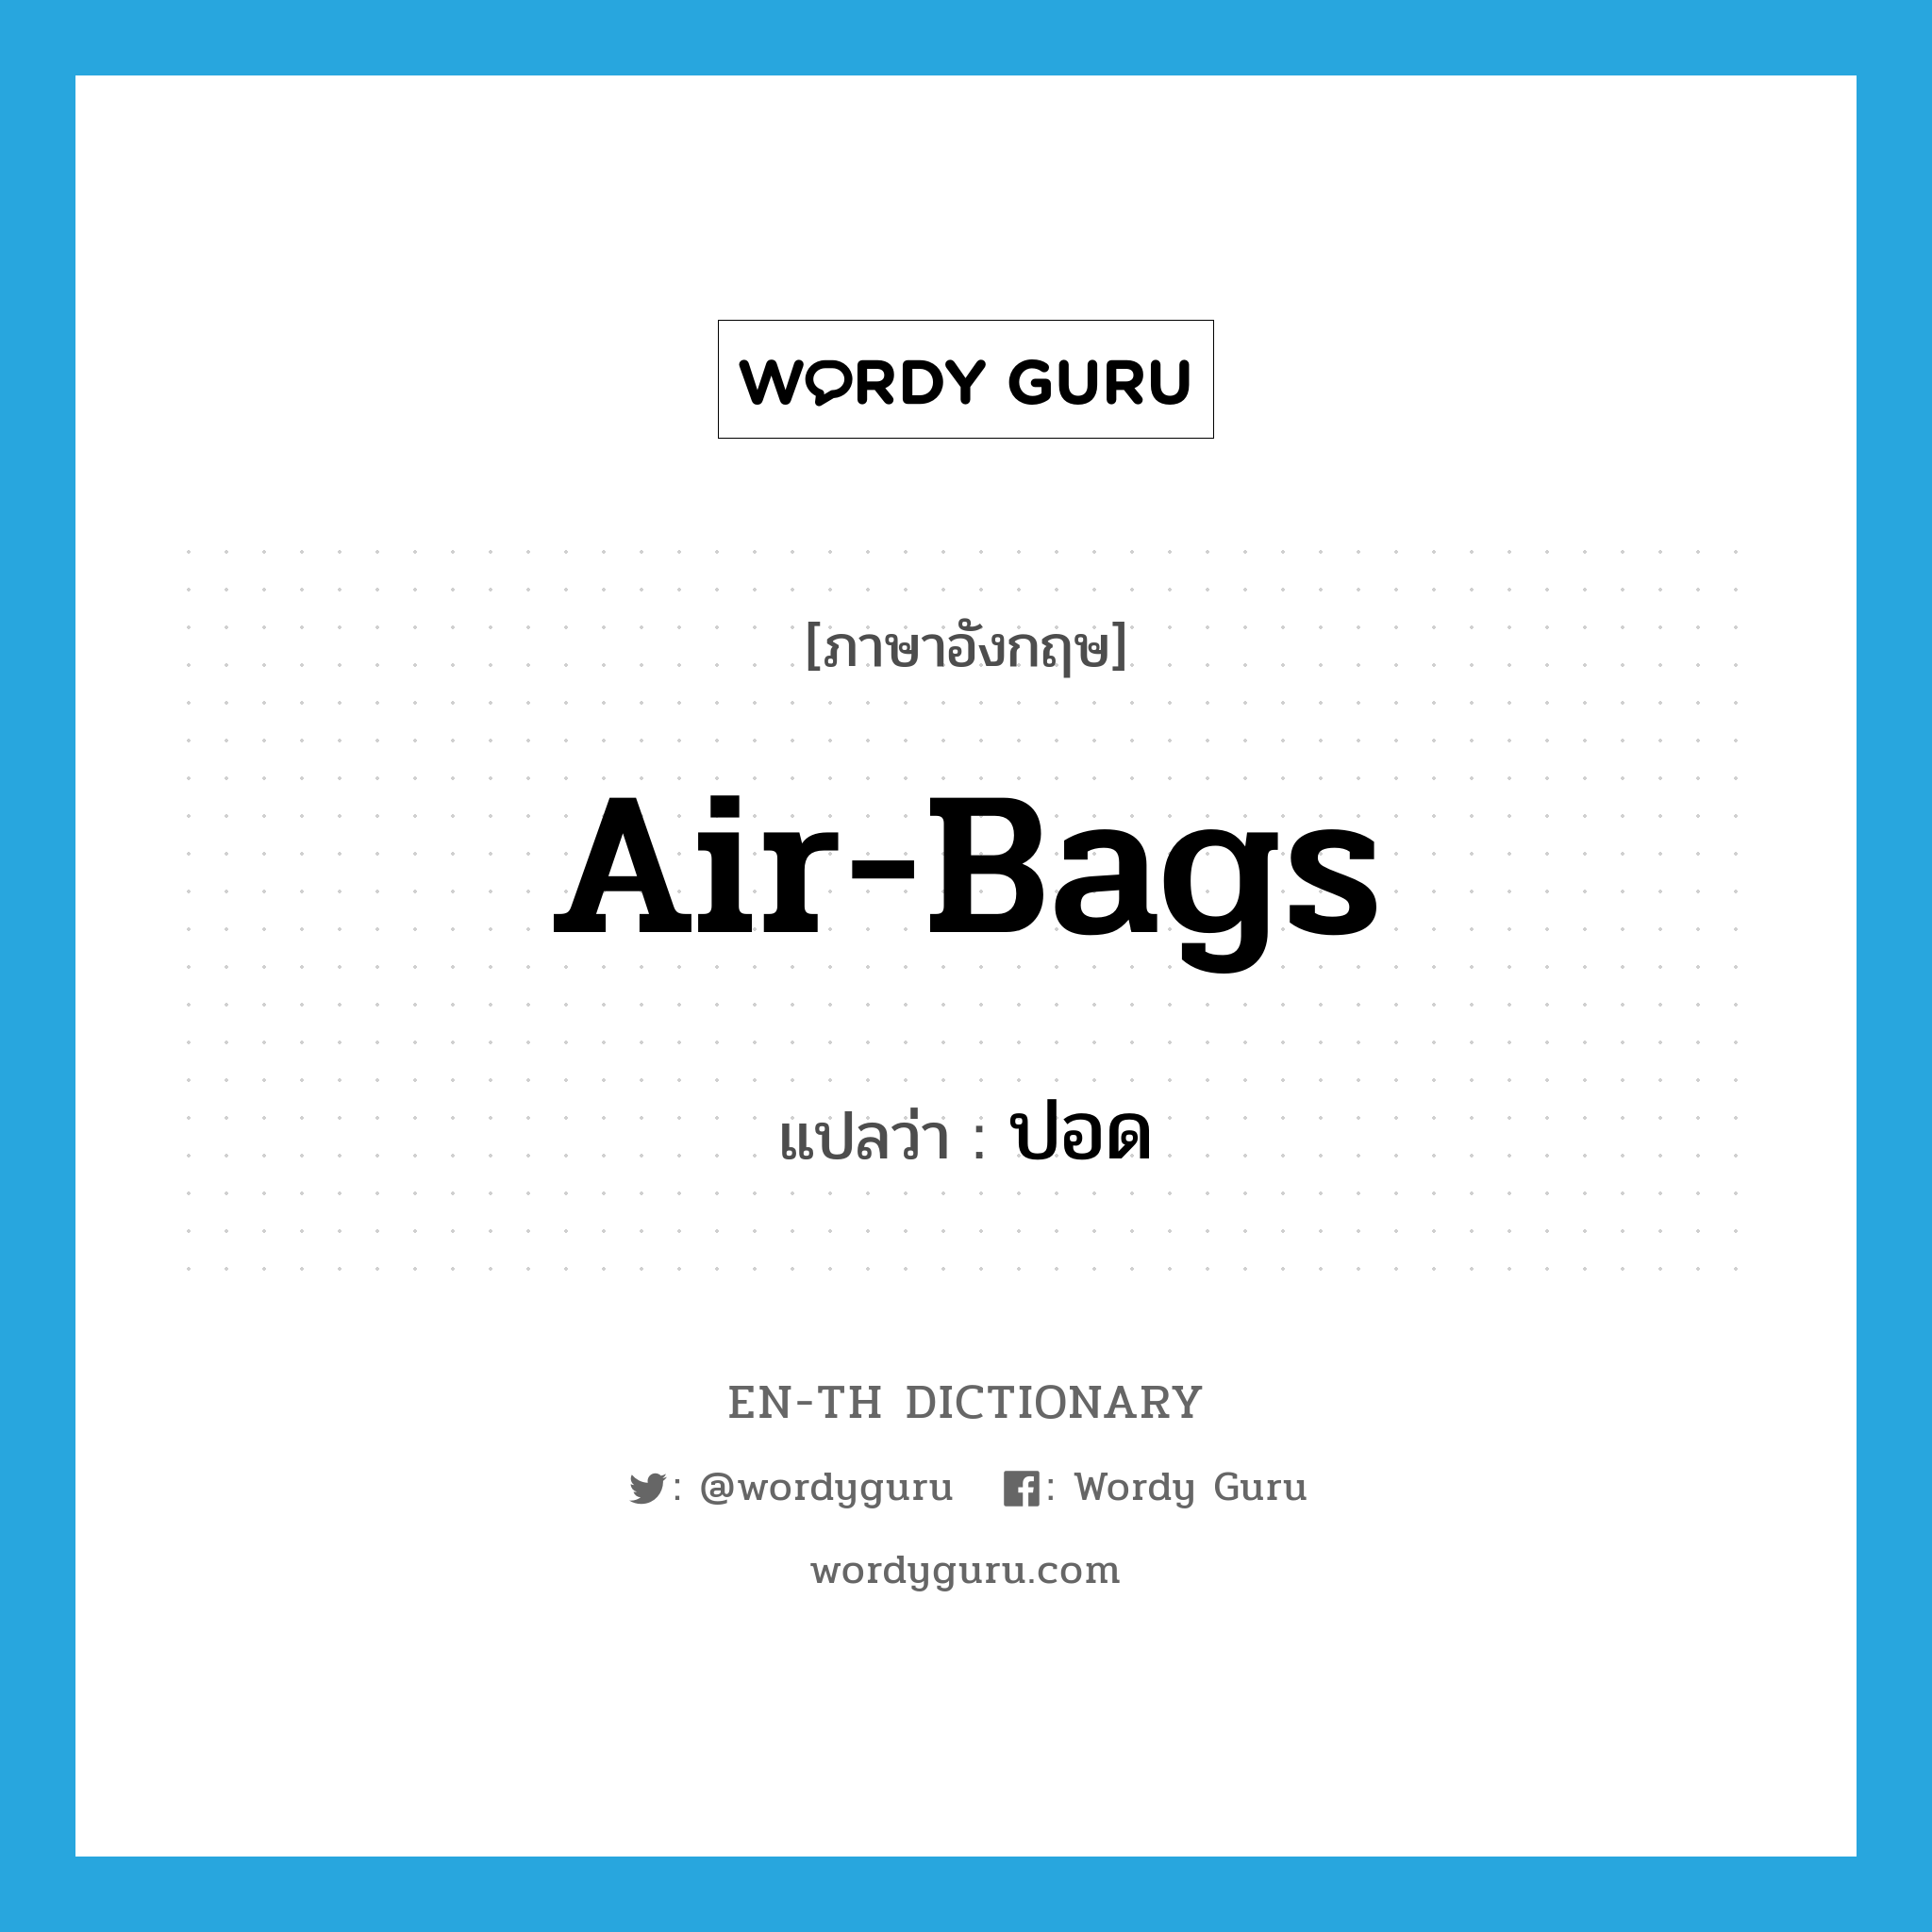 air-bags แปลว่า?, คำศัพท์ภาษาอังกฤษ air-bags แปลว่า ปอด ประเภท SL หมวด SL